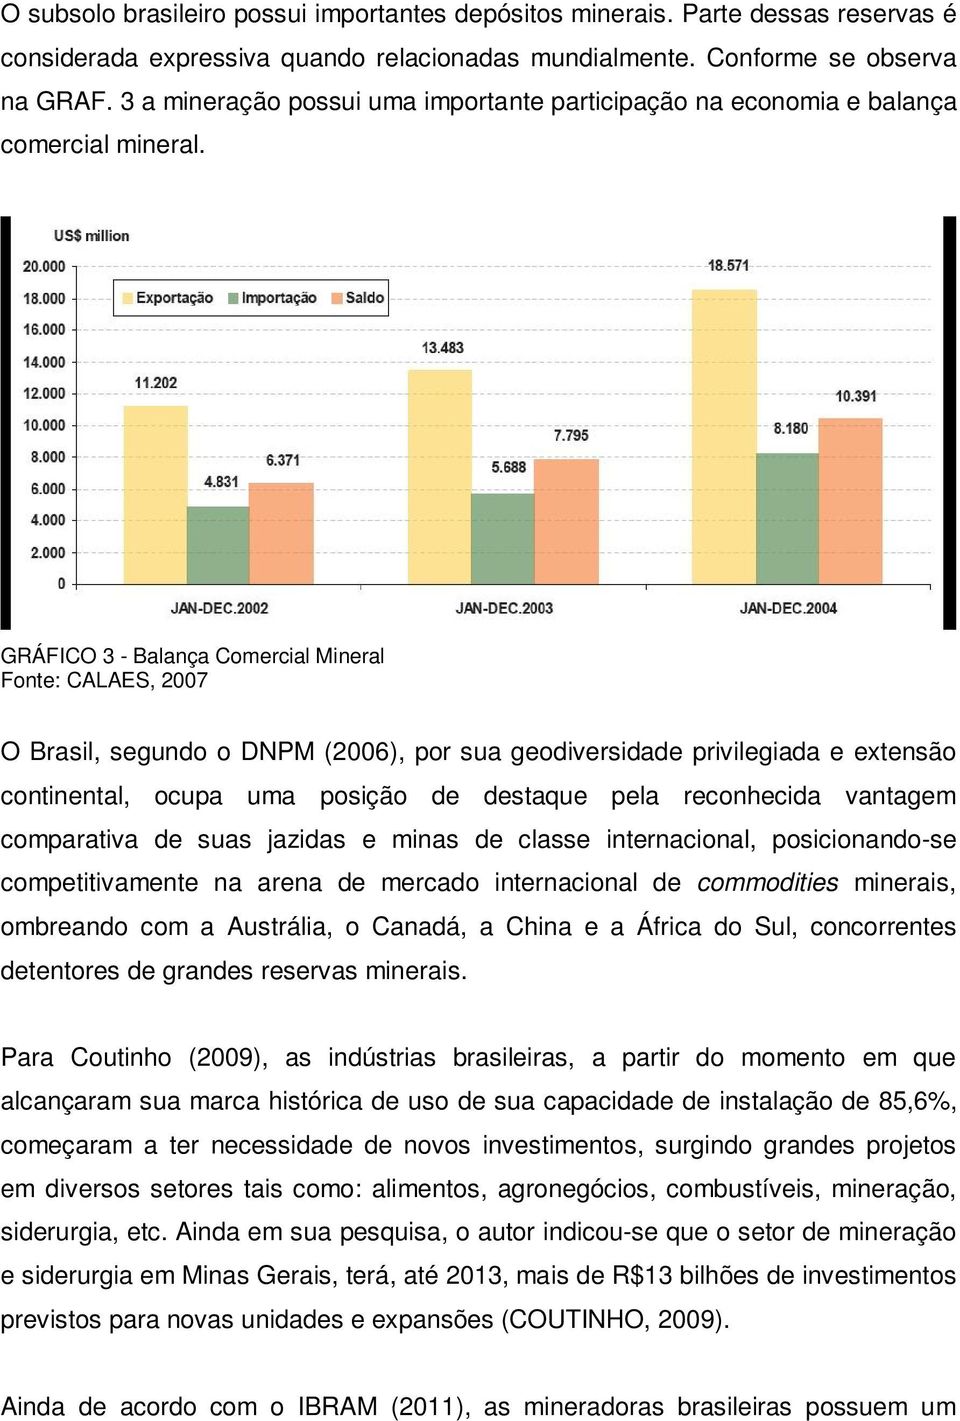 GRÁFICO 3 - Balança Comercial Mineral Fonte: CALAES, 2007 O Brasil, segundo o DNPM (2006), por sua geodiversidade privilegiada e extensão continental, ocupa uma posição de destaque pela reconhecida